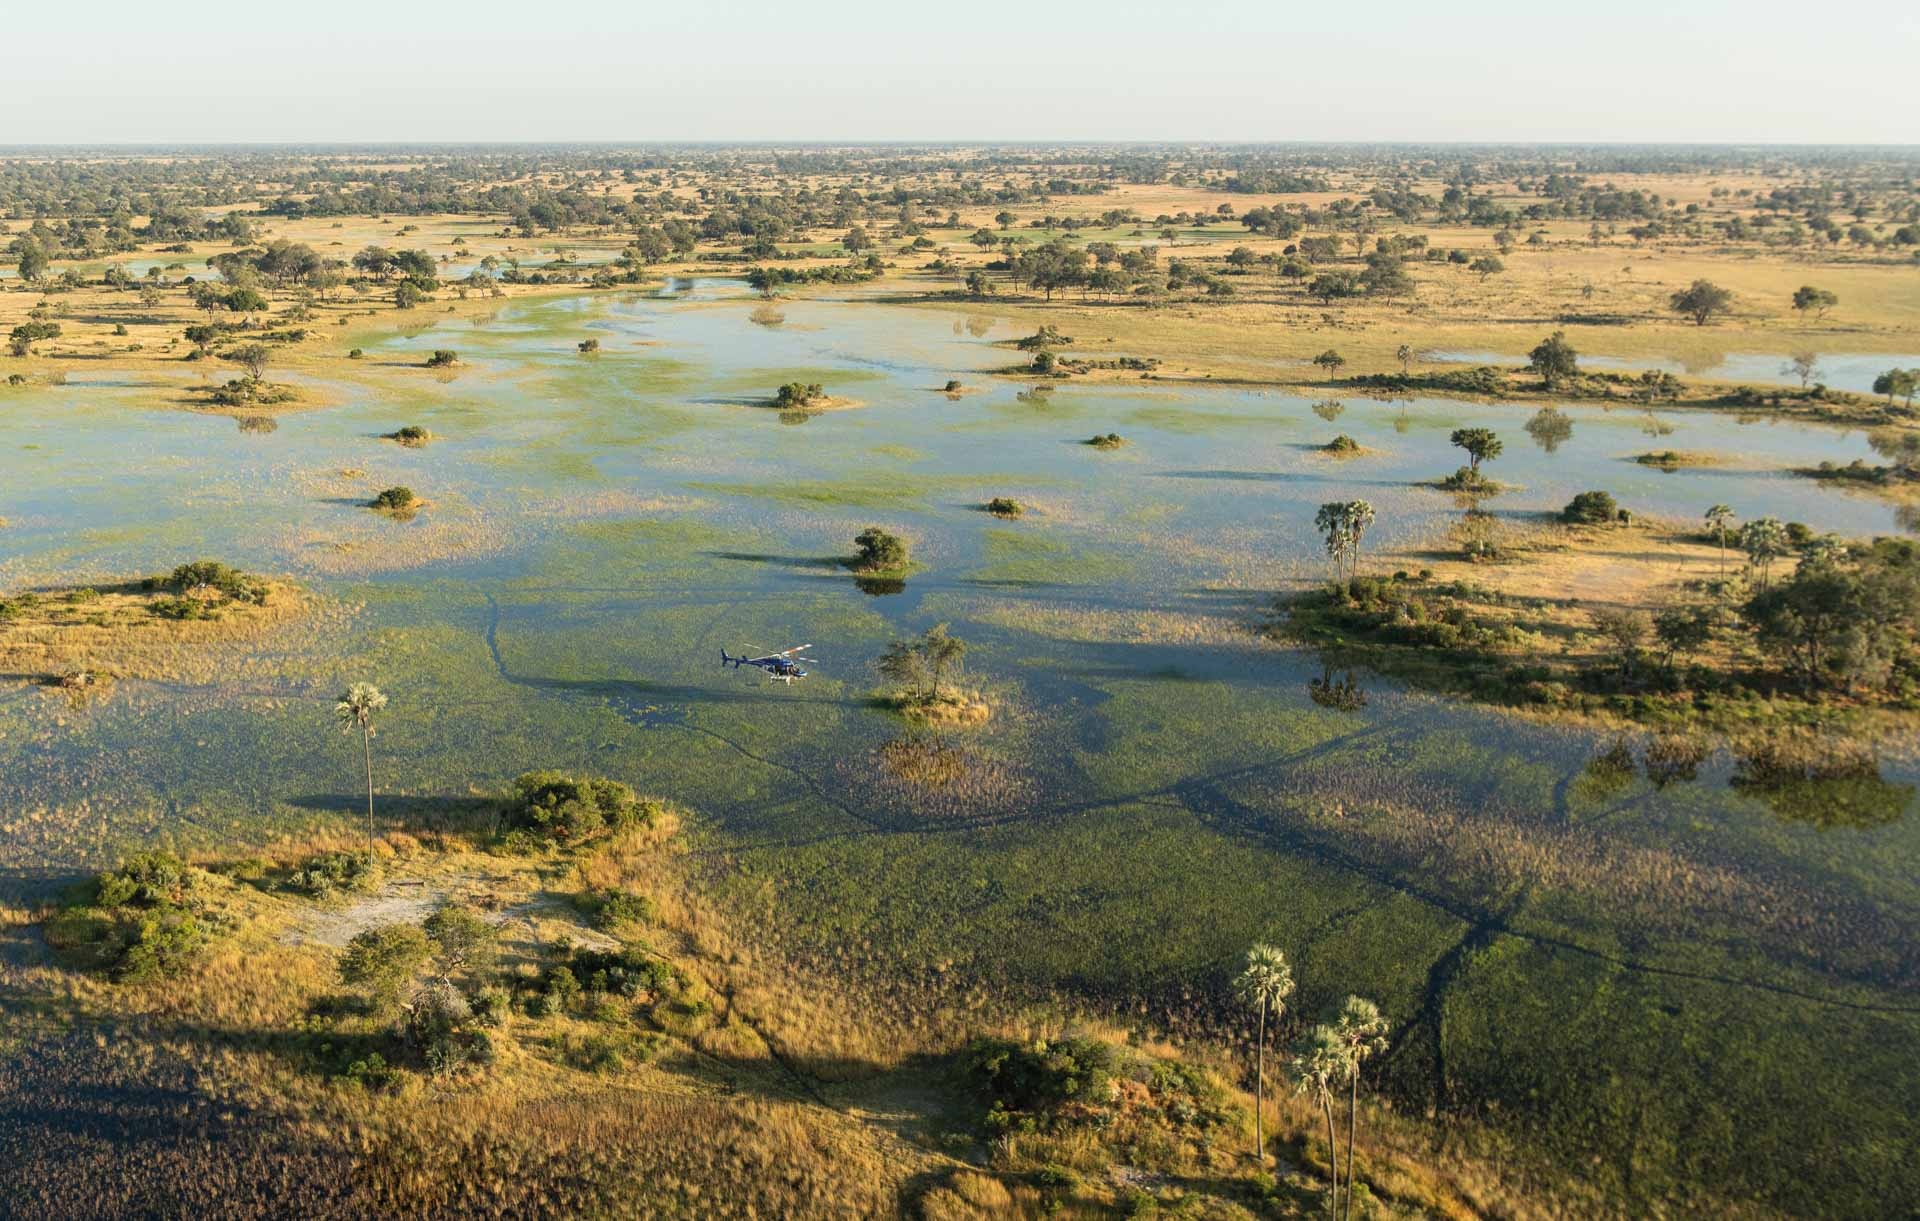 Okavango Delta, Helicopter adventure, Craft beer, Explore Maun, 1920x1230 HD Desktop